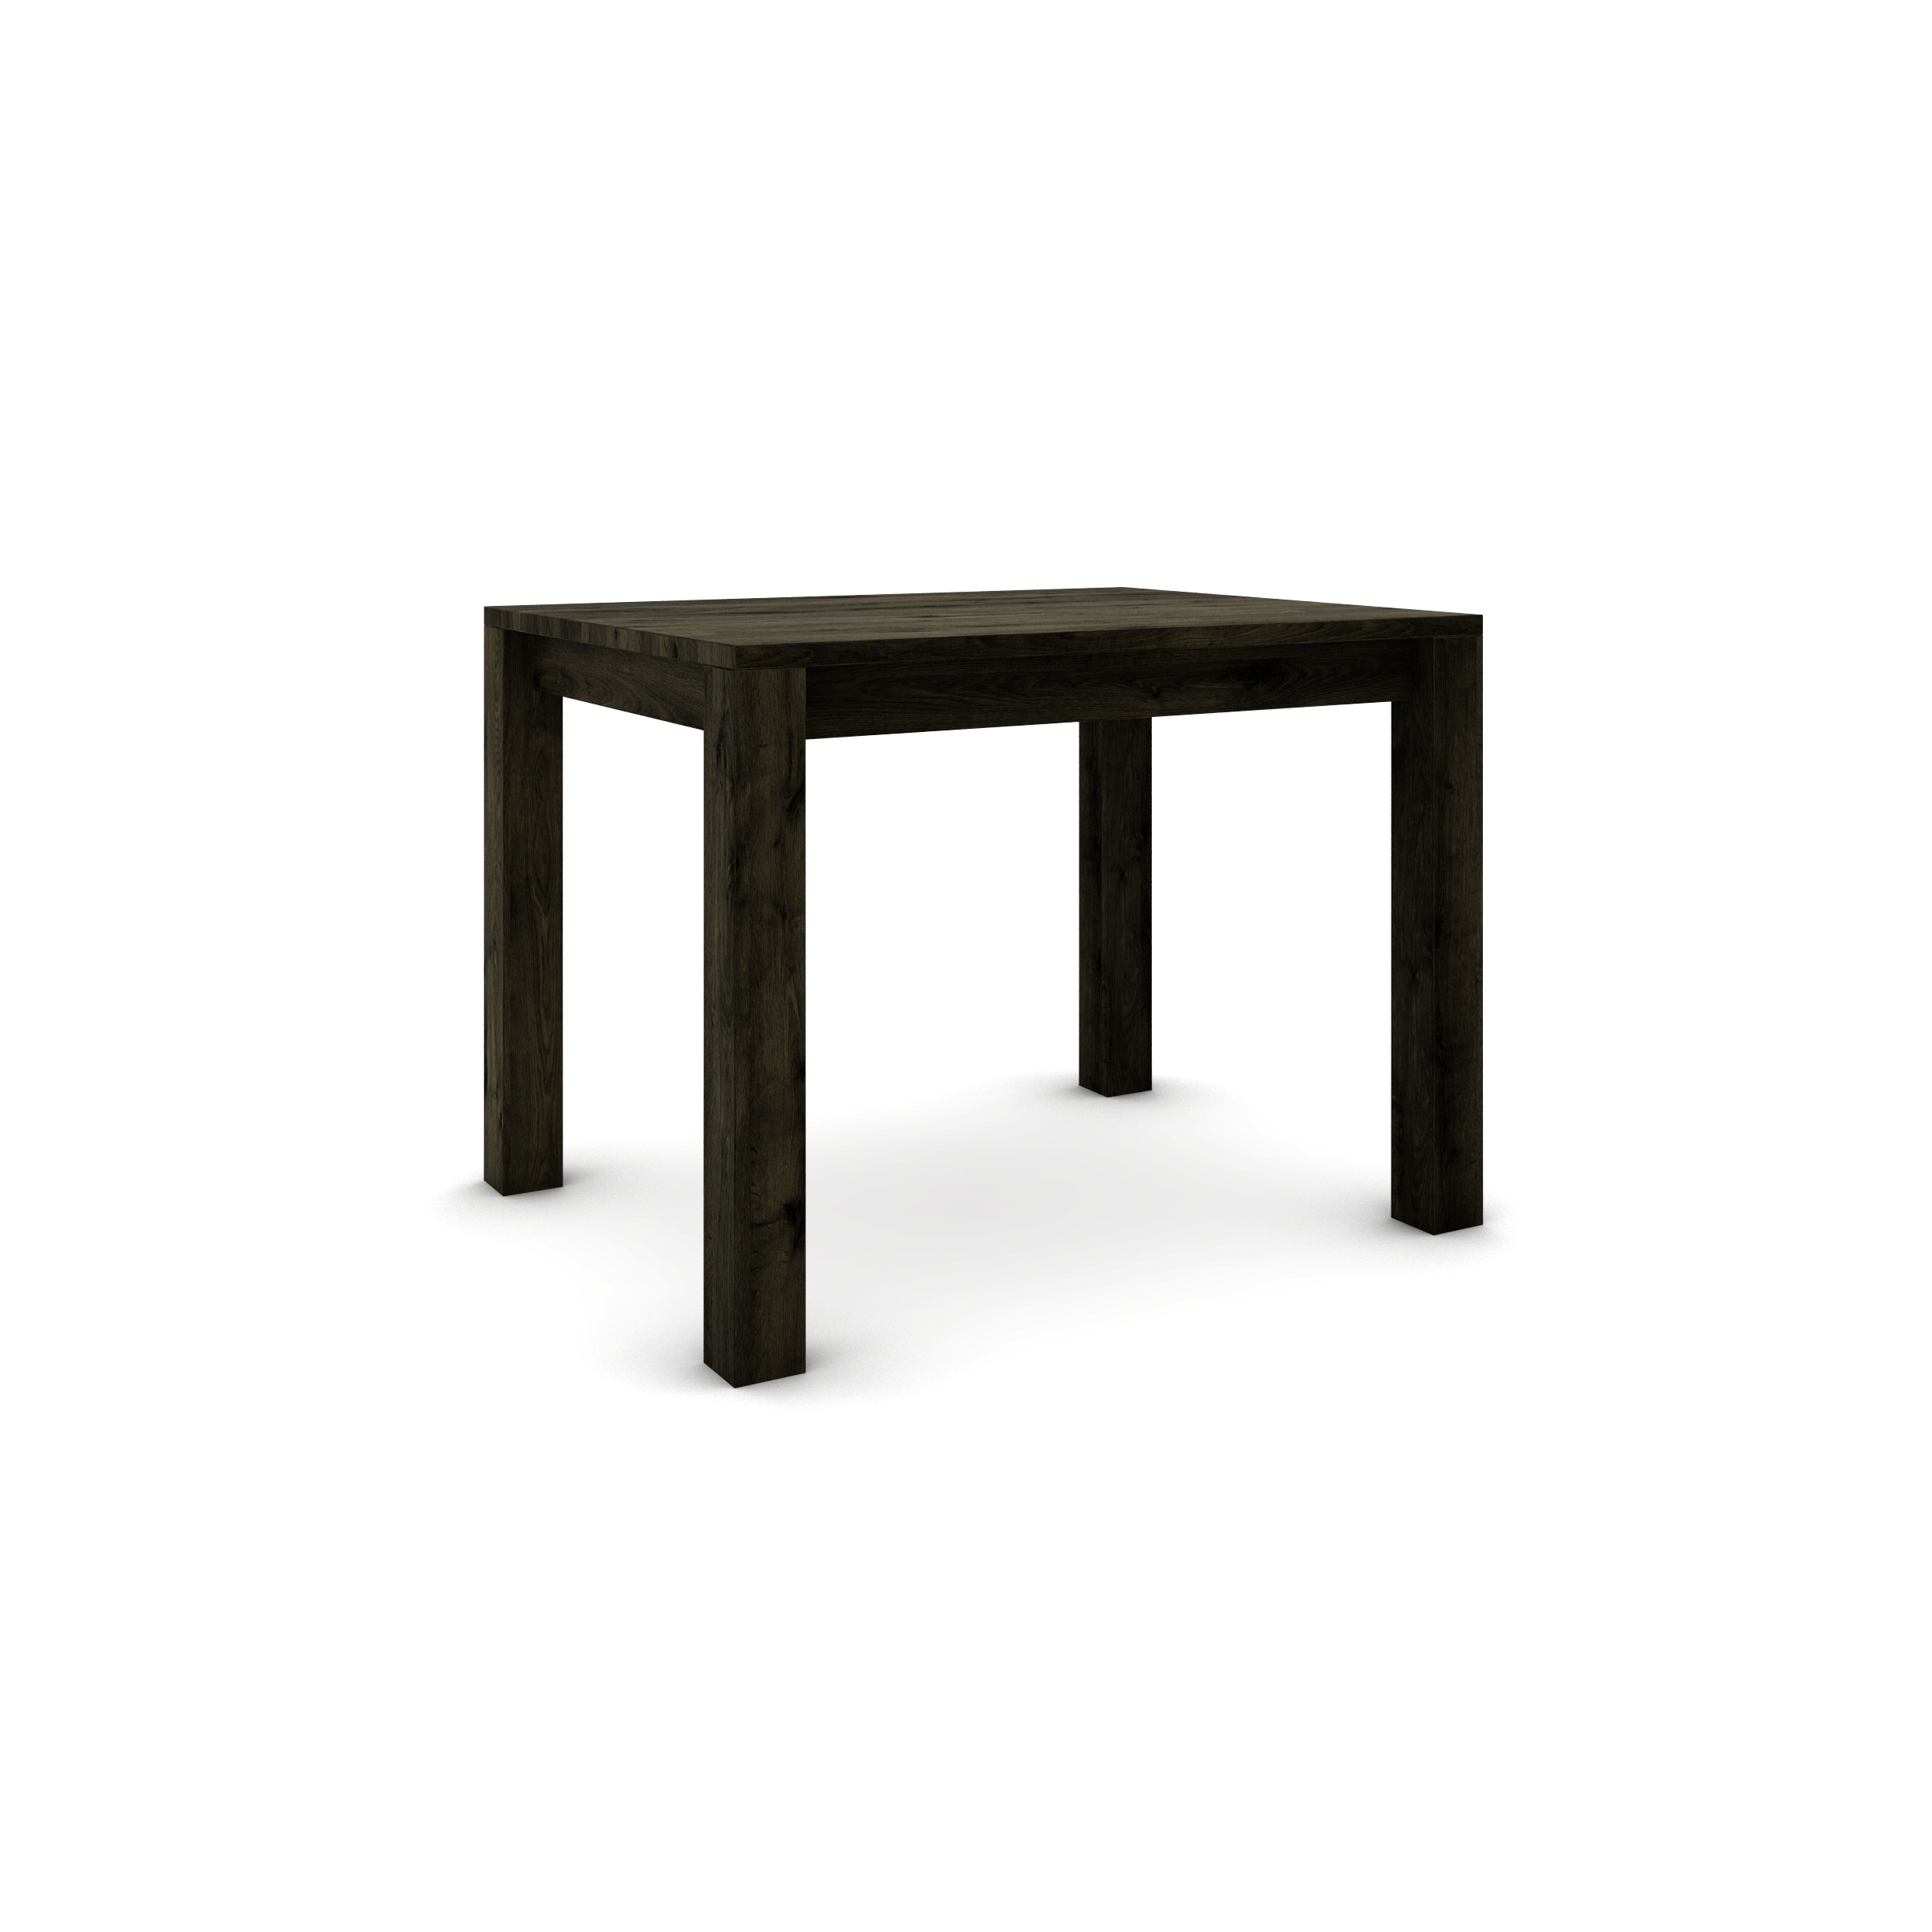 Dubový stôl 100 x 80 cm , čierny so strieborným efektom